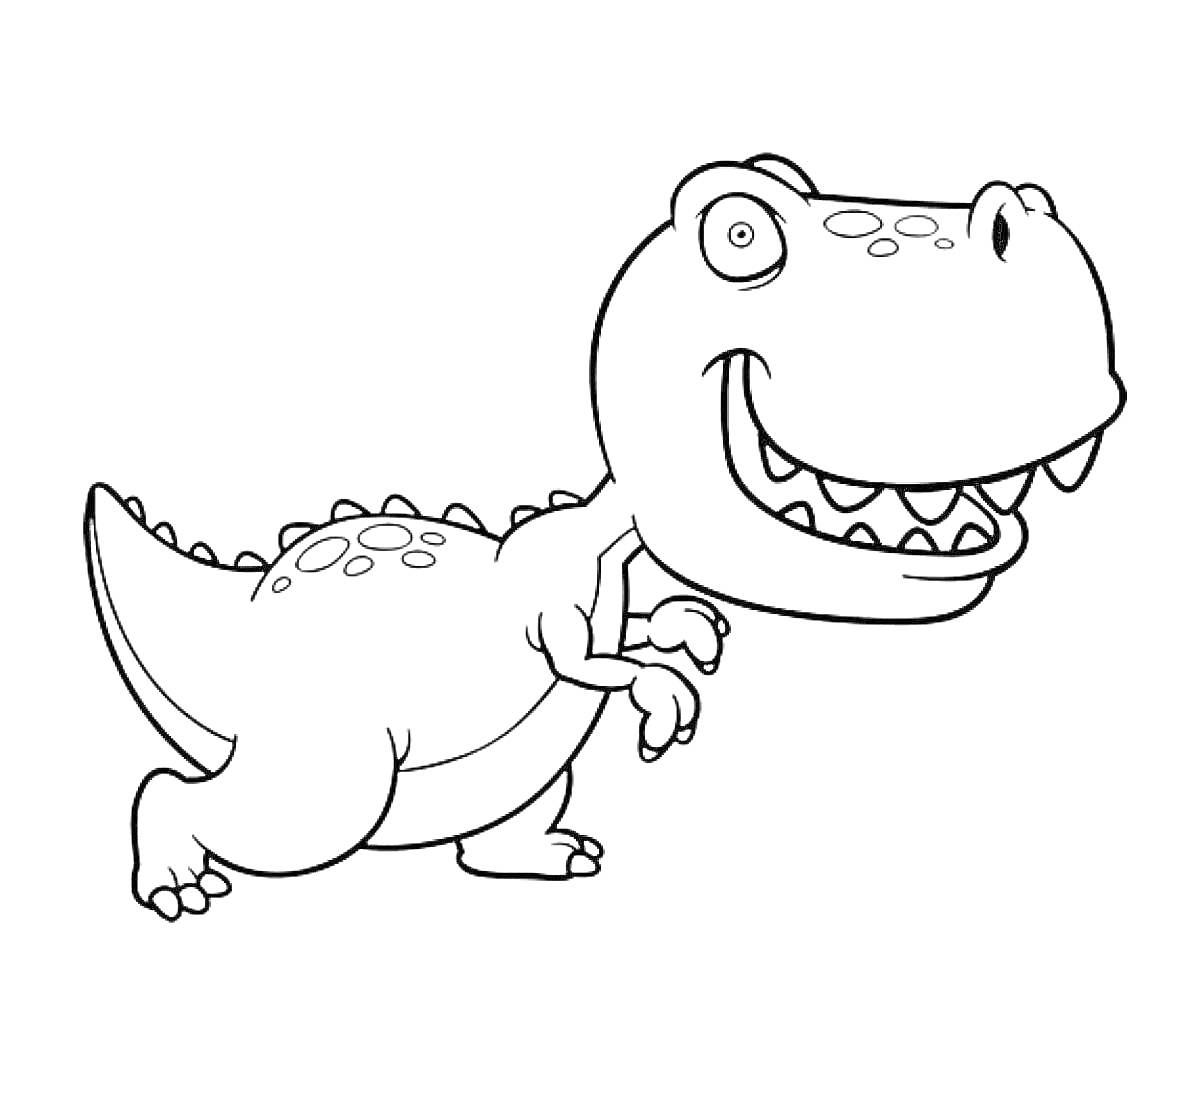 Раскраска Раскраска с изображением улыбающегося мультяшного тираннозавра рекса с большими глазами, маленькими руками и короткими лапами